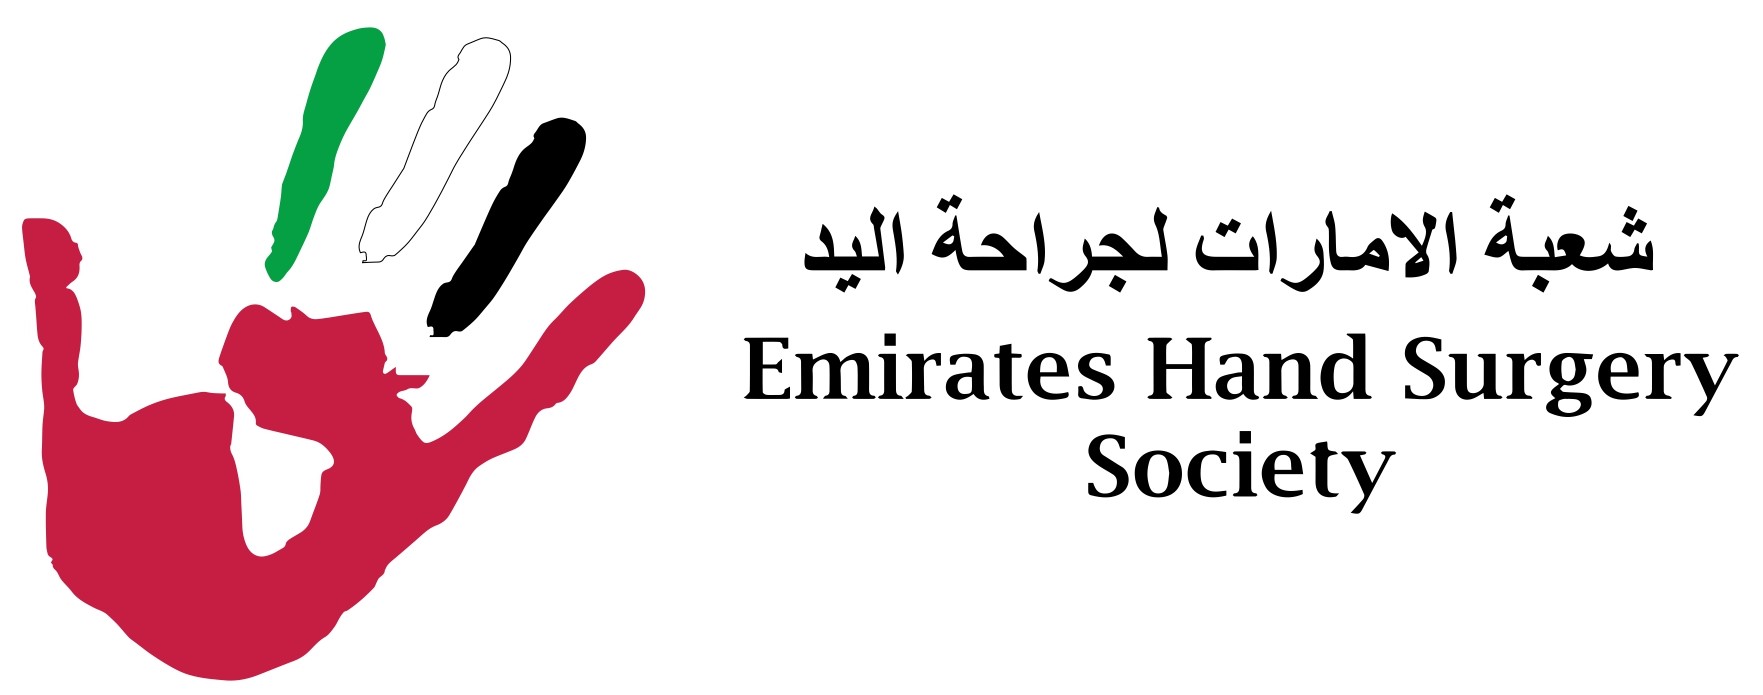 Emirates Hand Surgery Society Logo